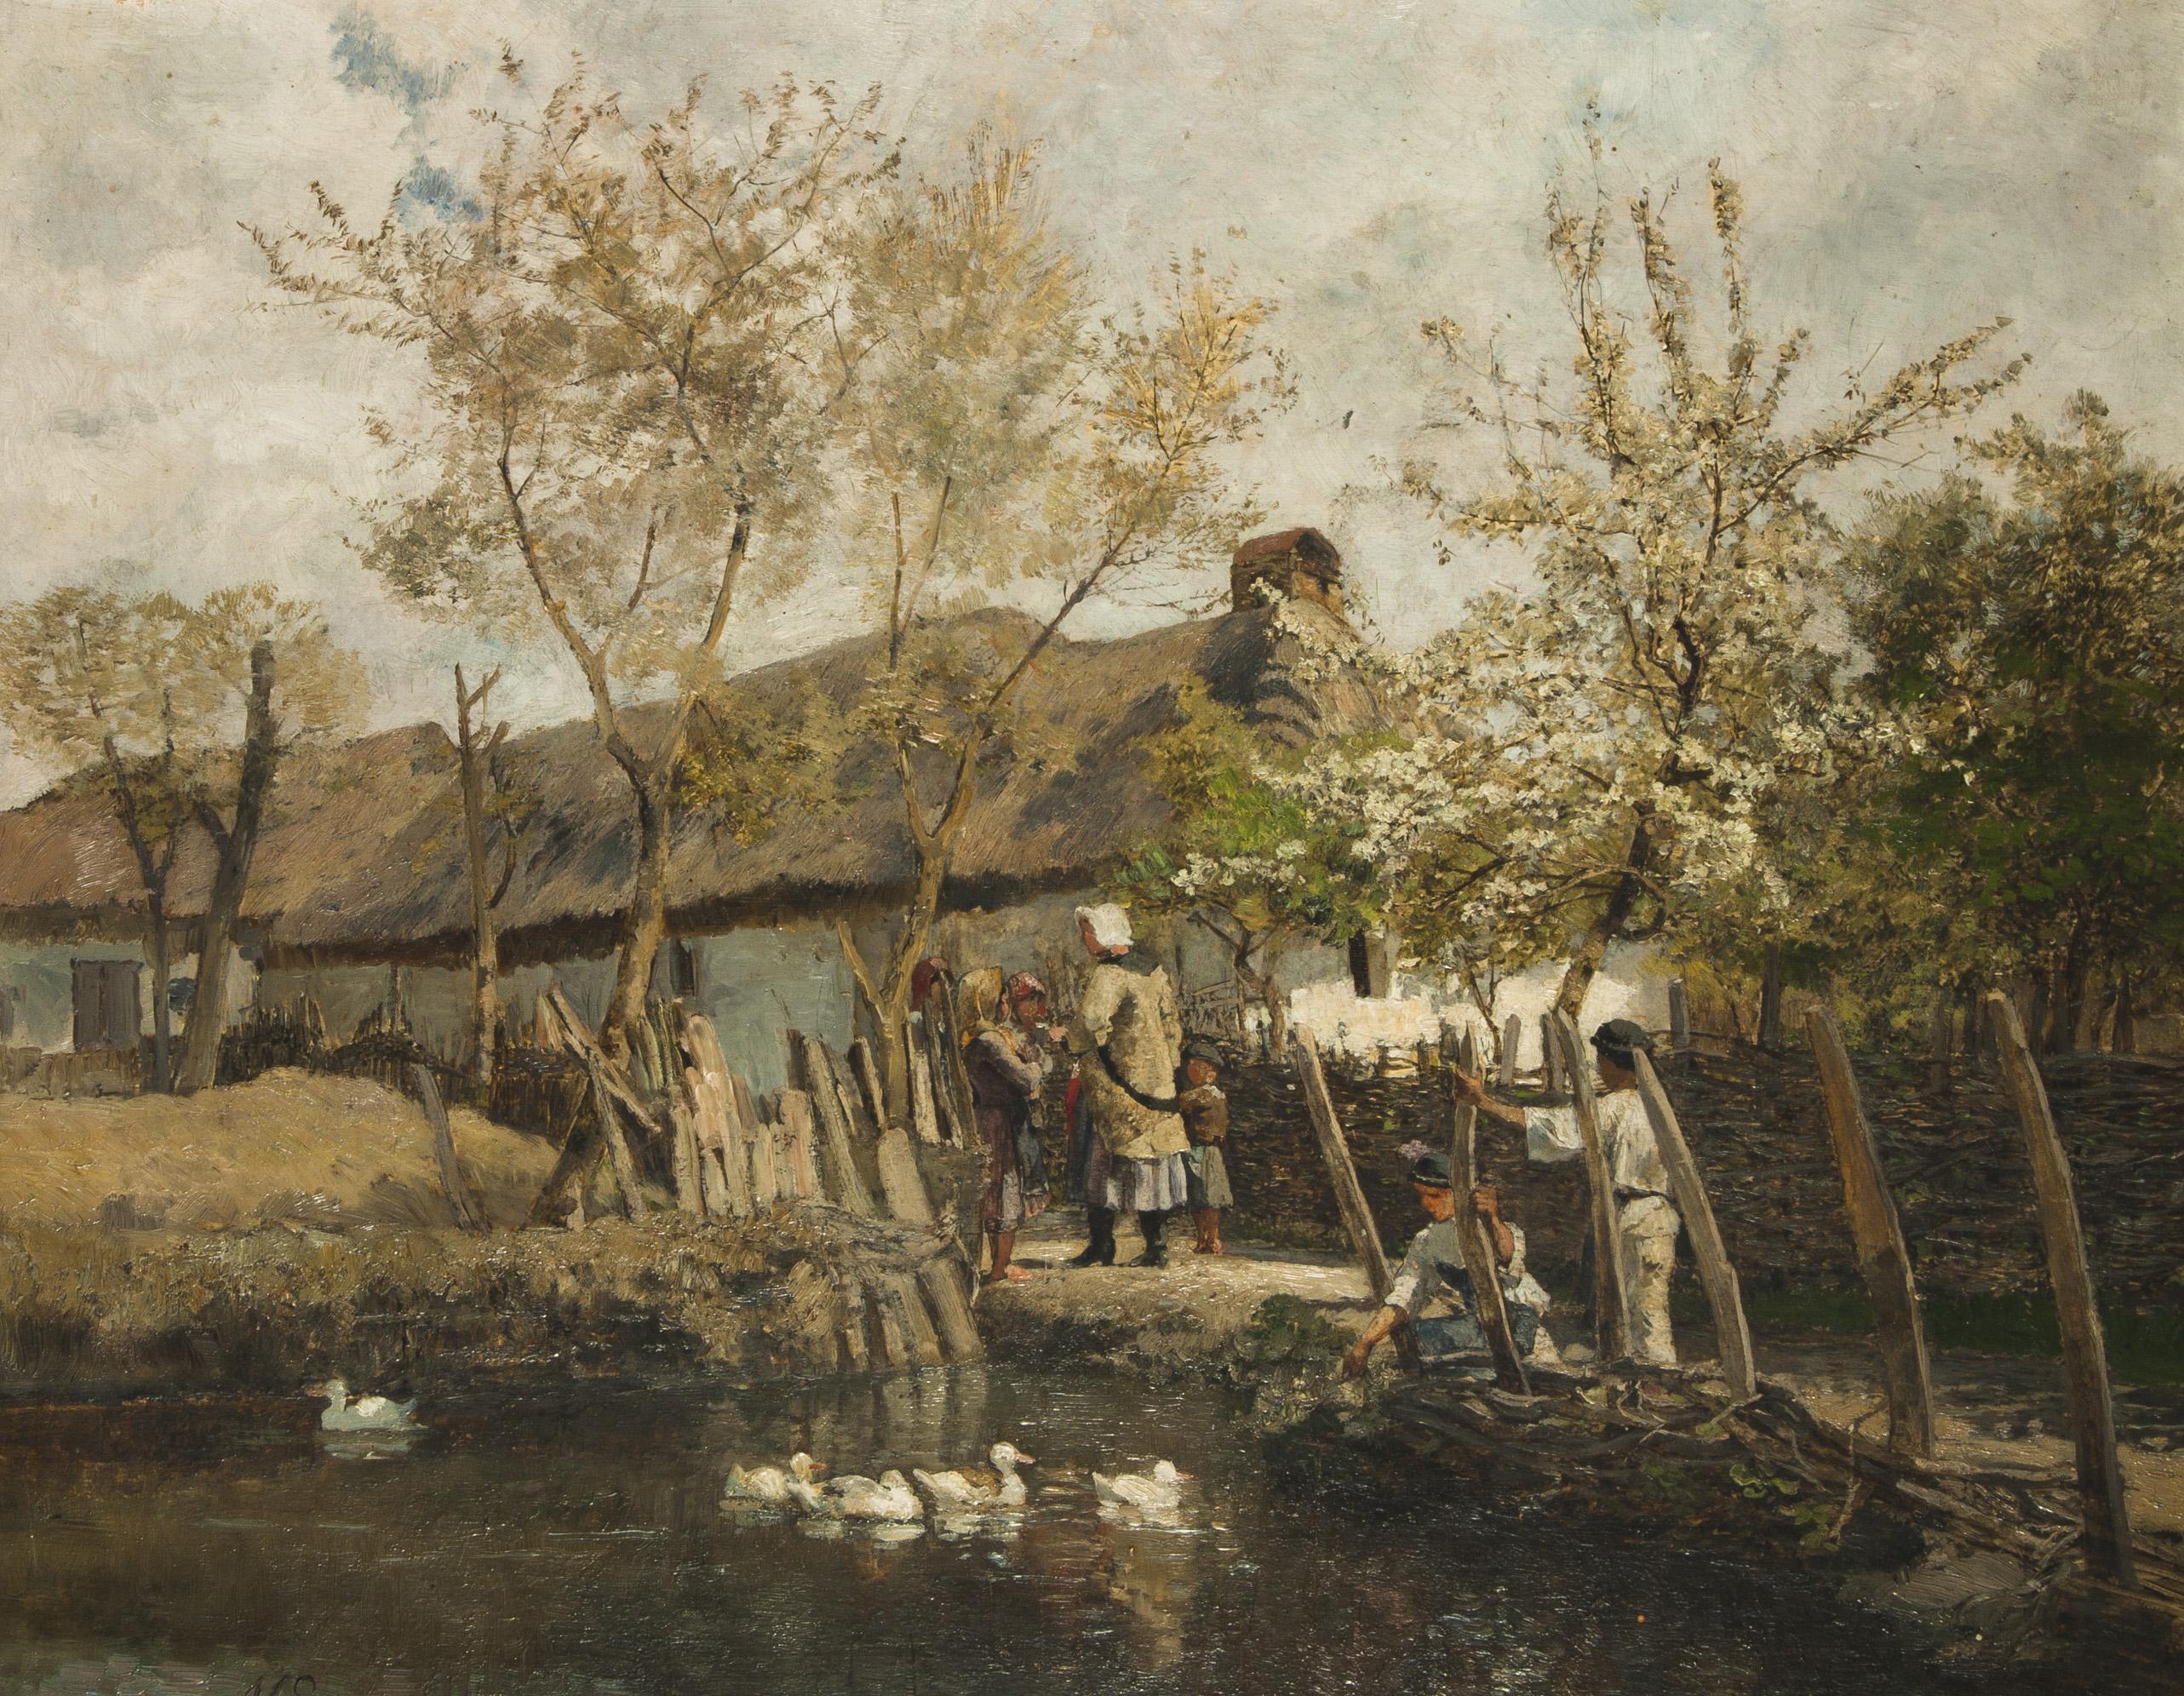 Marie Egner: Maďarská usedlost / 1880 olej na plátně, 41 x 52 cm cena: 1 080 000 Kč Dorotheum 18. 5. 2013 